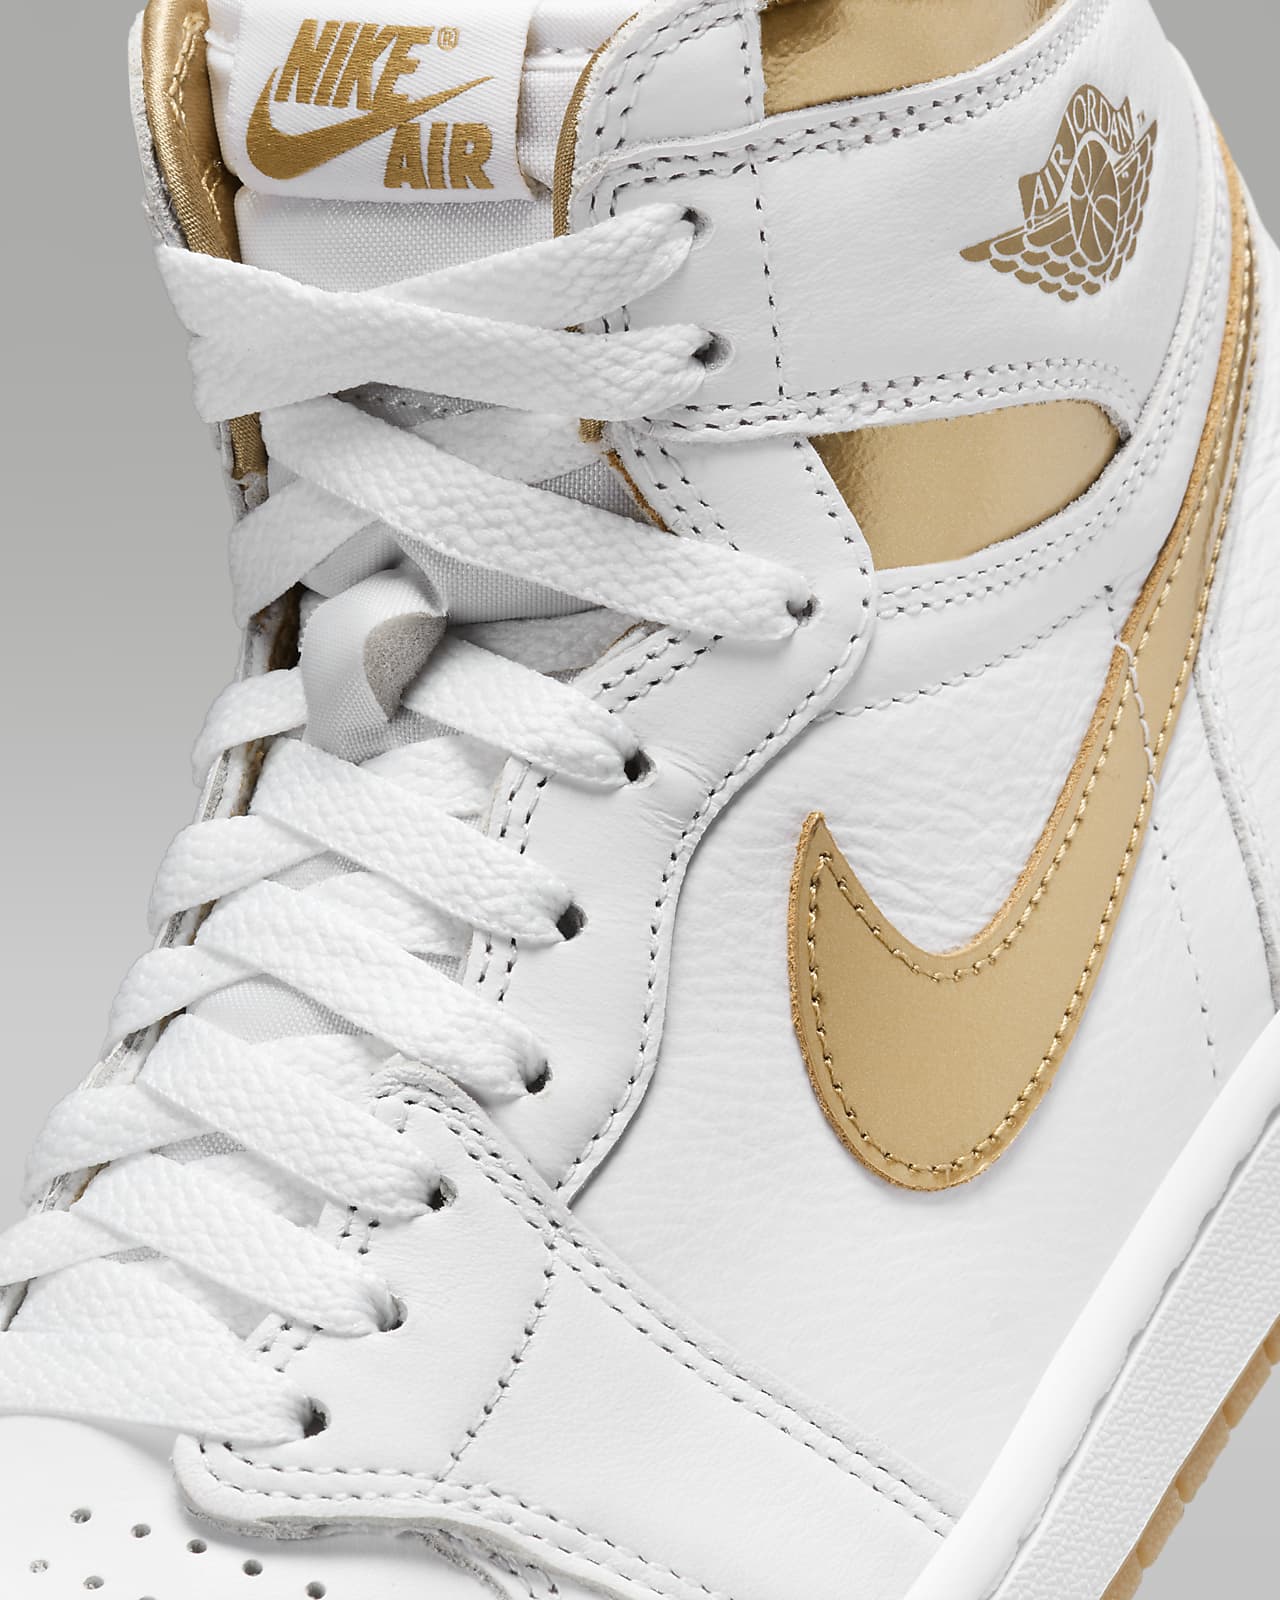 Air Jordan 1 Retro High OG White and Gold Women's Shoes. Nike.com